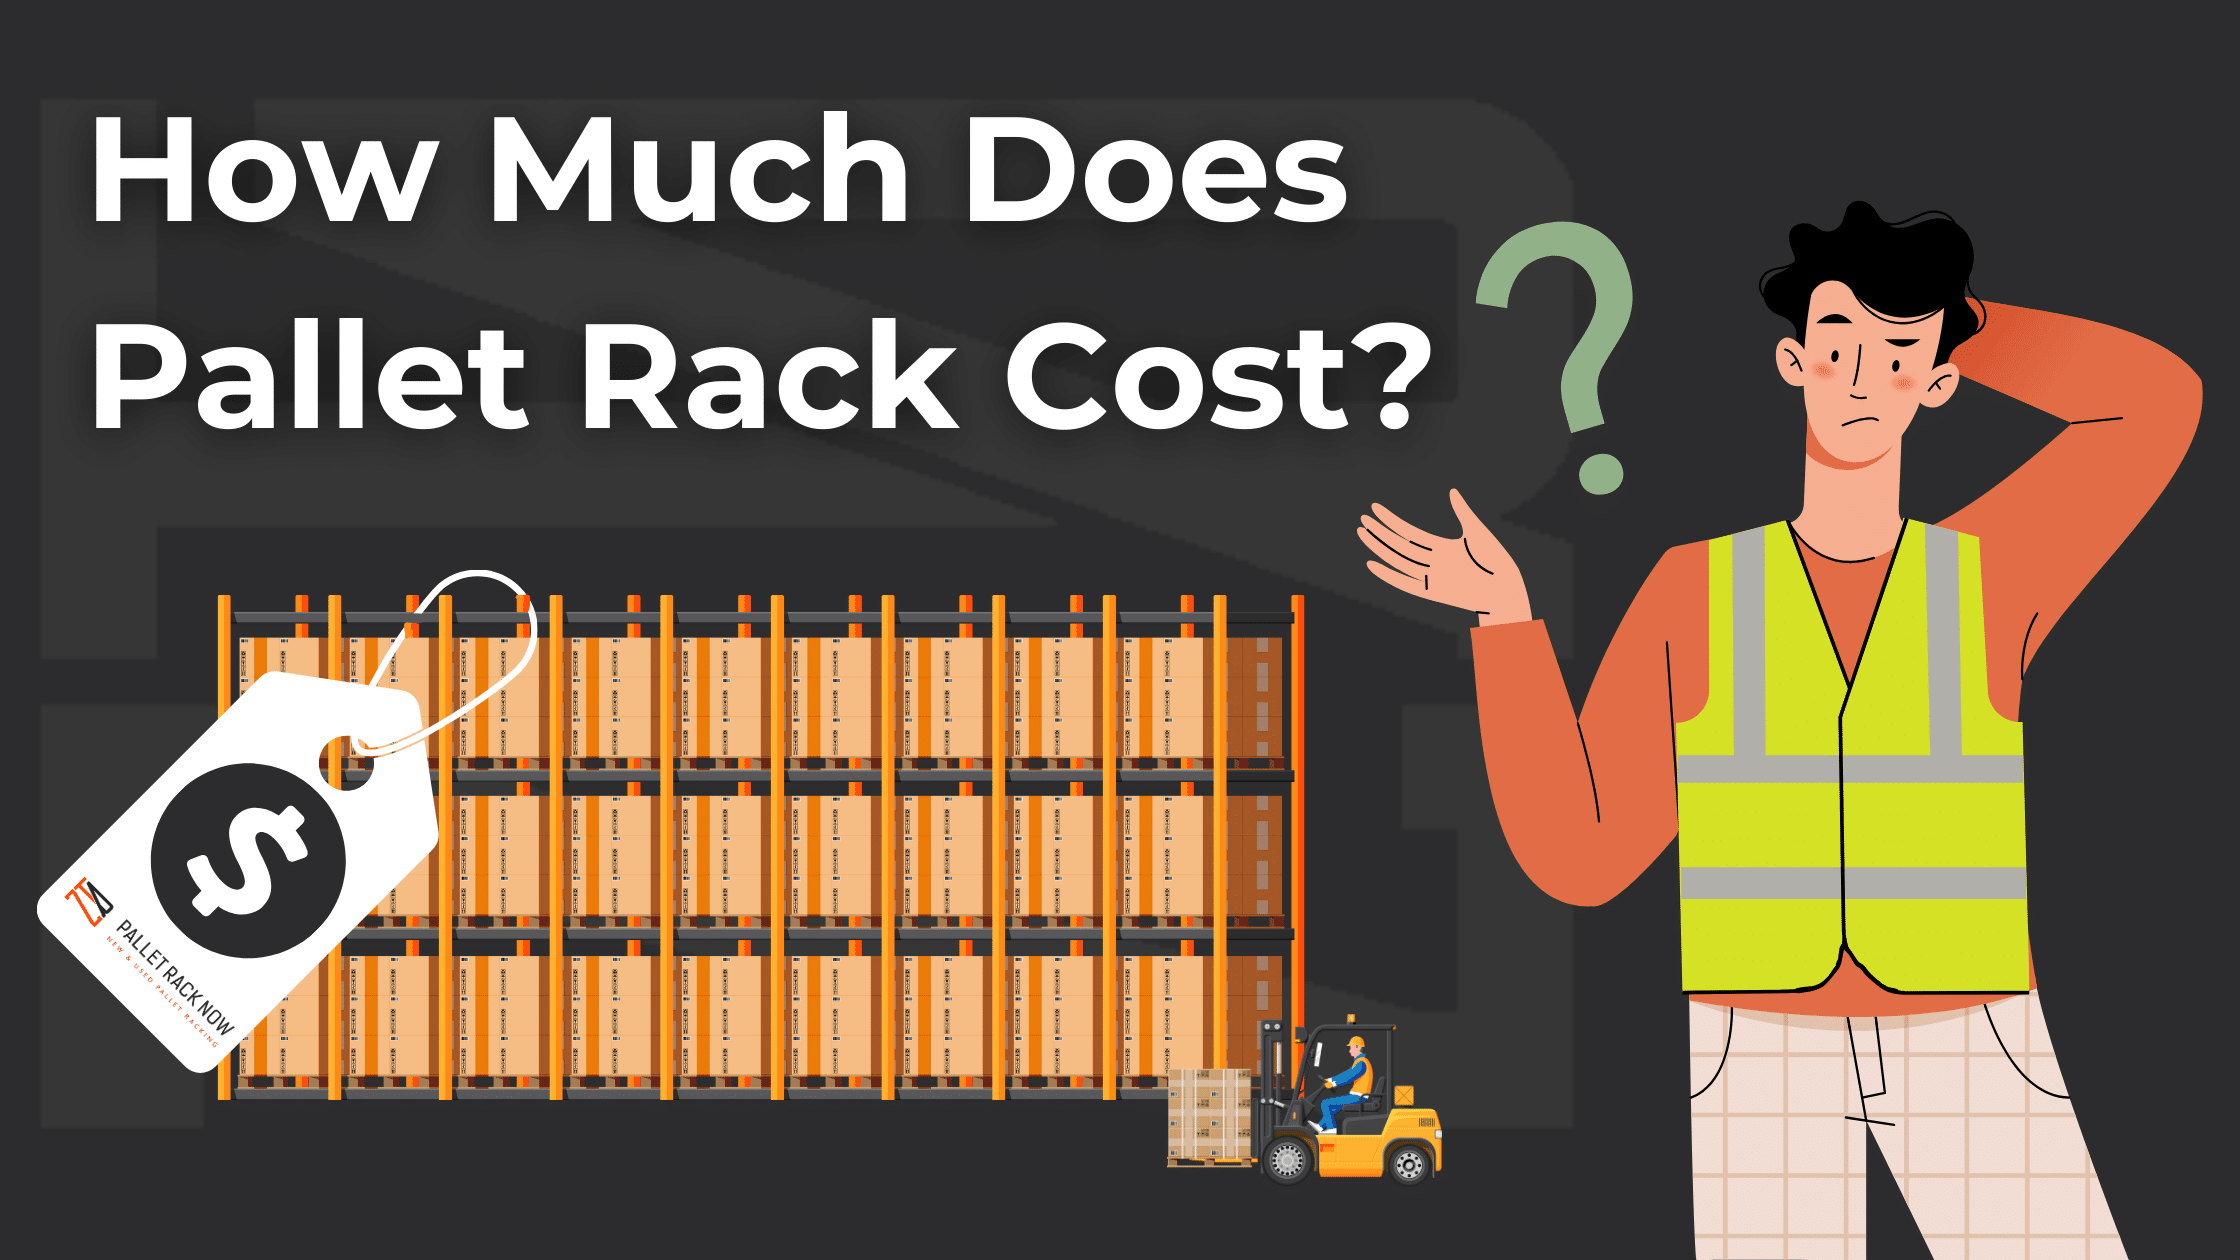 Pallet Rack Cost